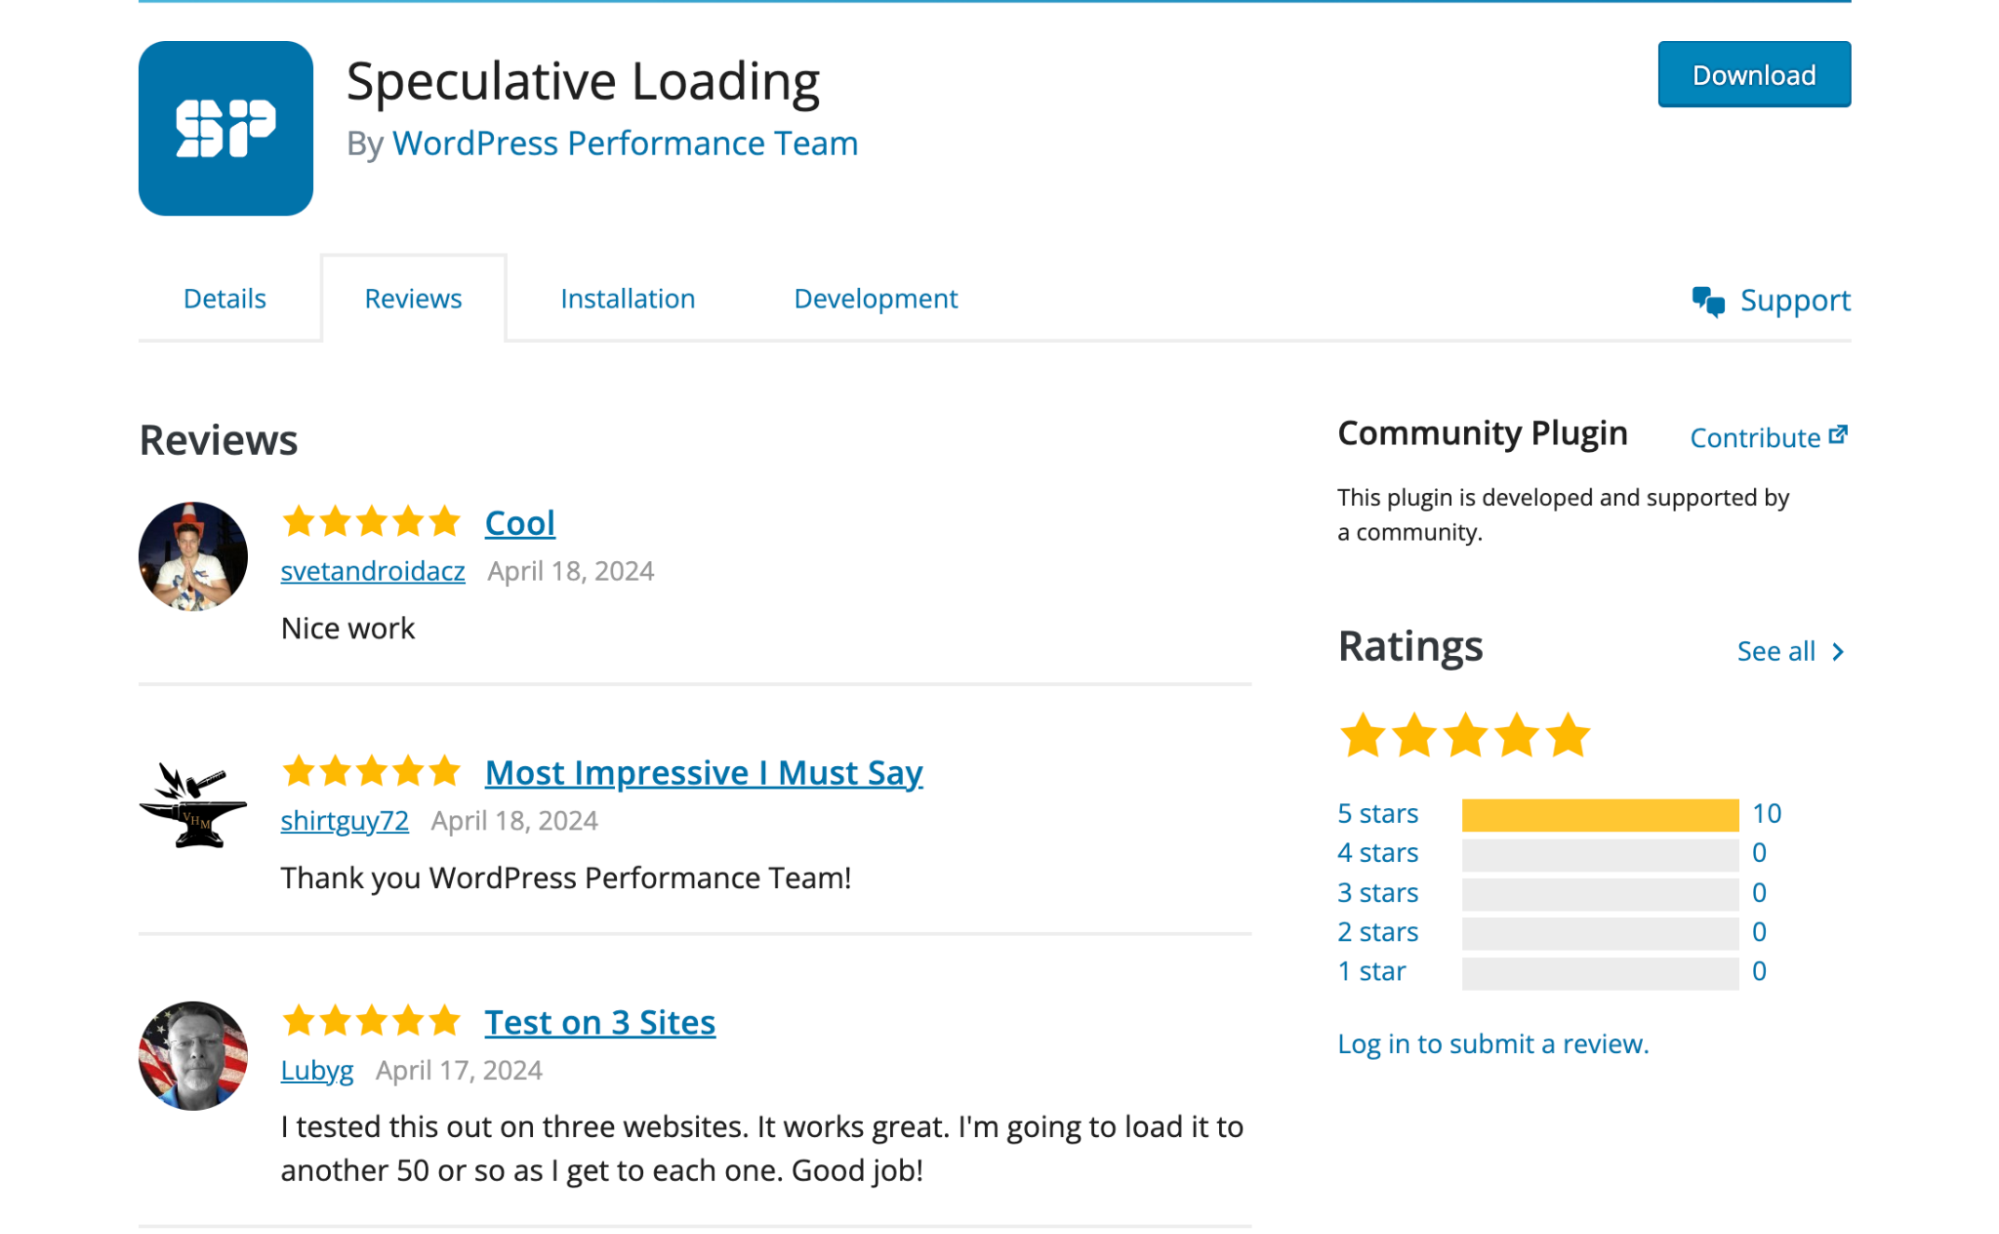 Bewertungen aus der WordPress-Community für das Speculative Loading Plugin